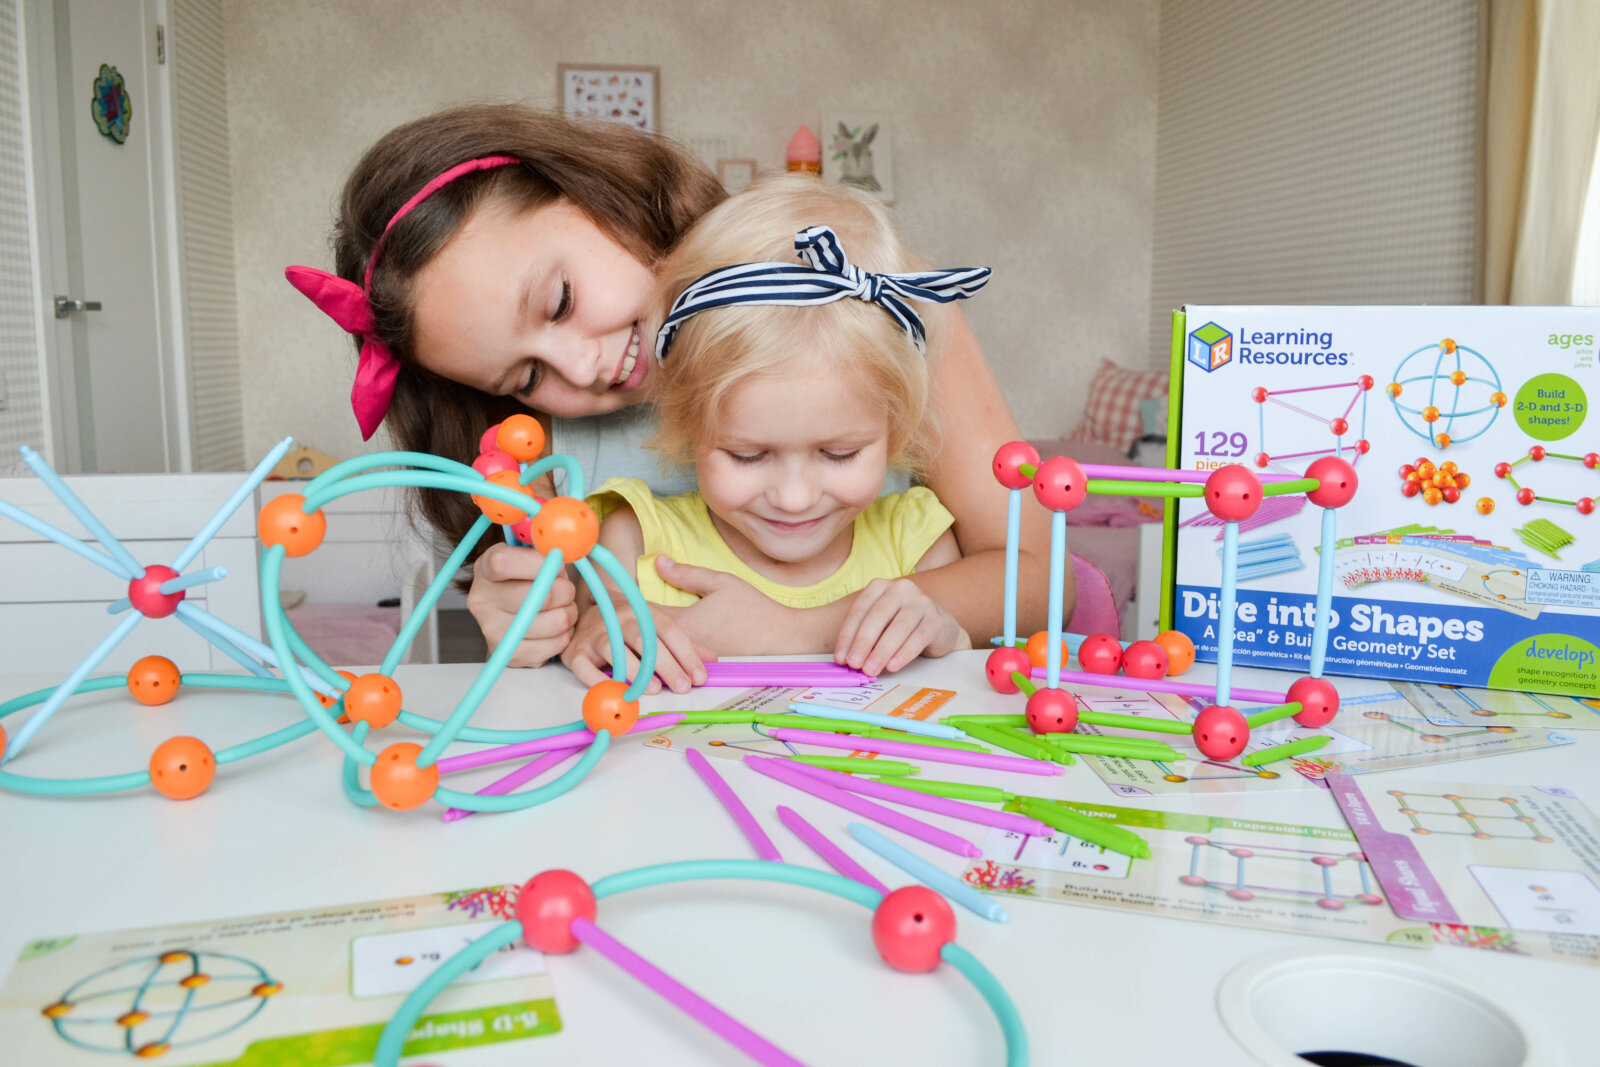 Анастасия Федотова (СЕНСОРИУМ ГРУПП): «Конструкторы – традиционная игрушка, которая есть почти в каждом доме и детском учреждении»